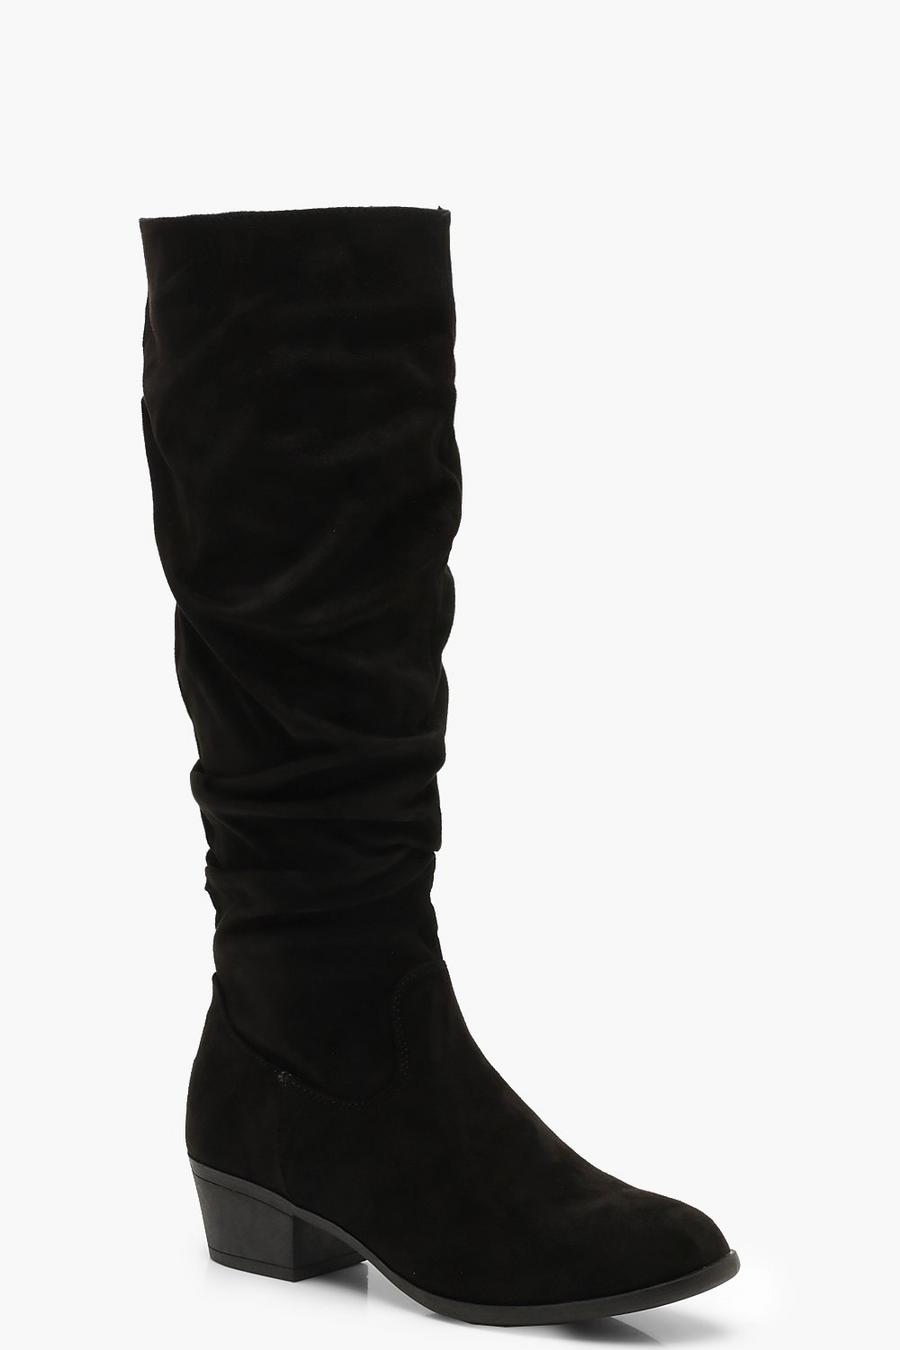 Botas de caña alta holgadas de tacón grueso, Negro image number 1